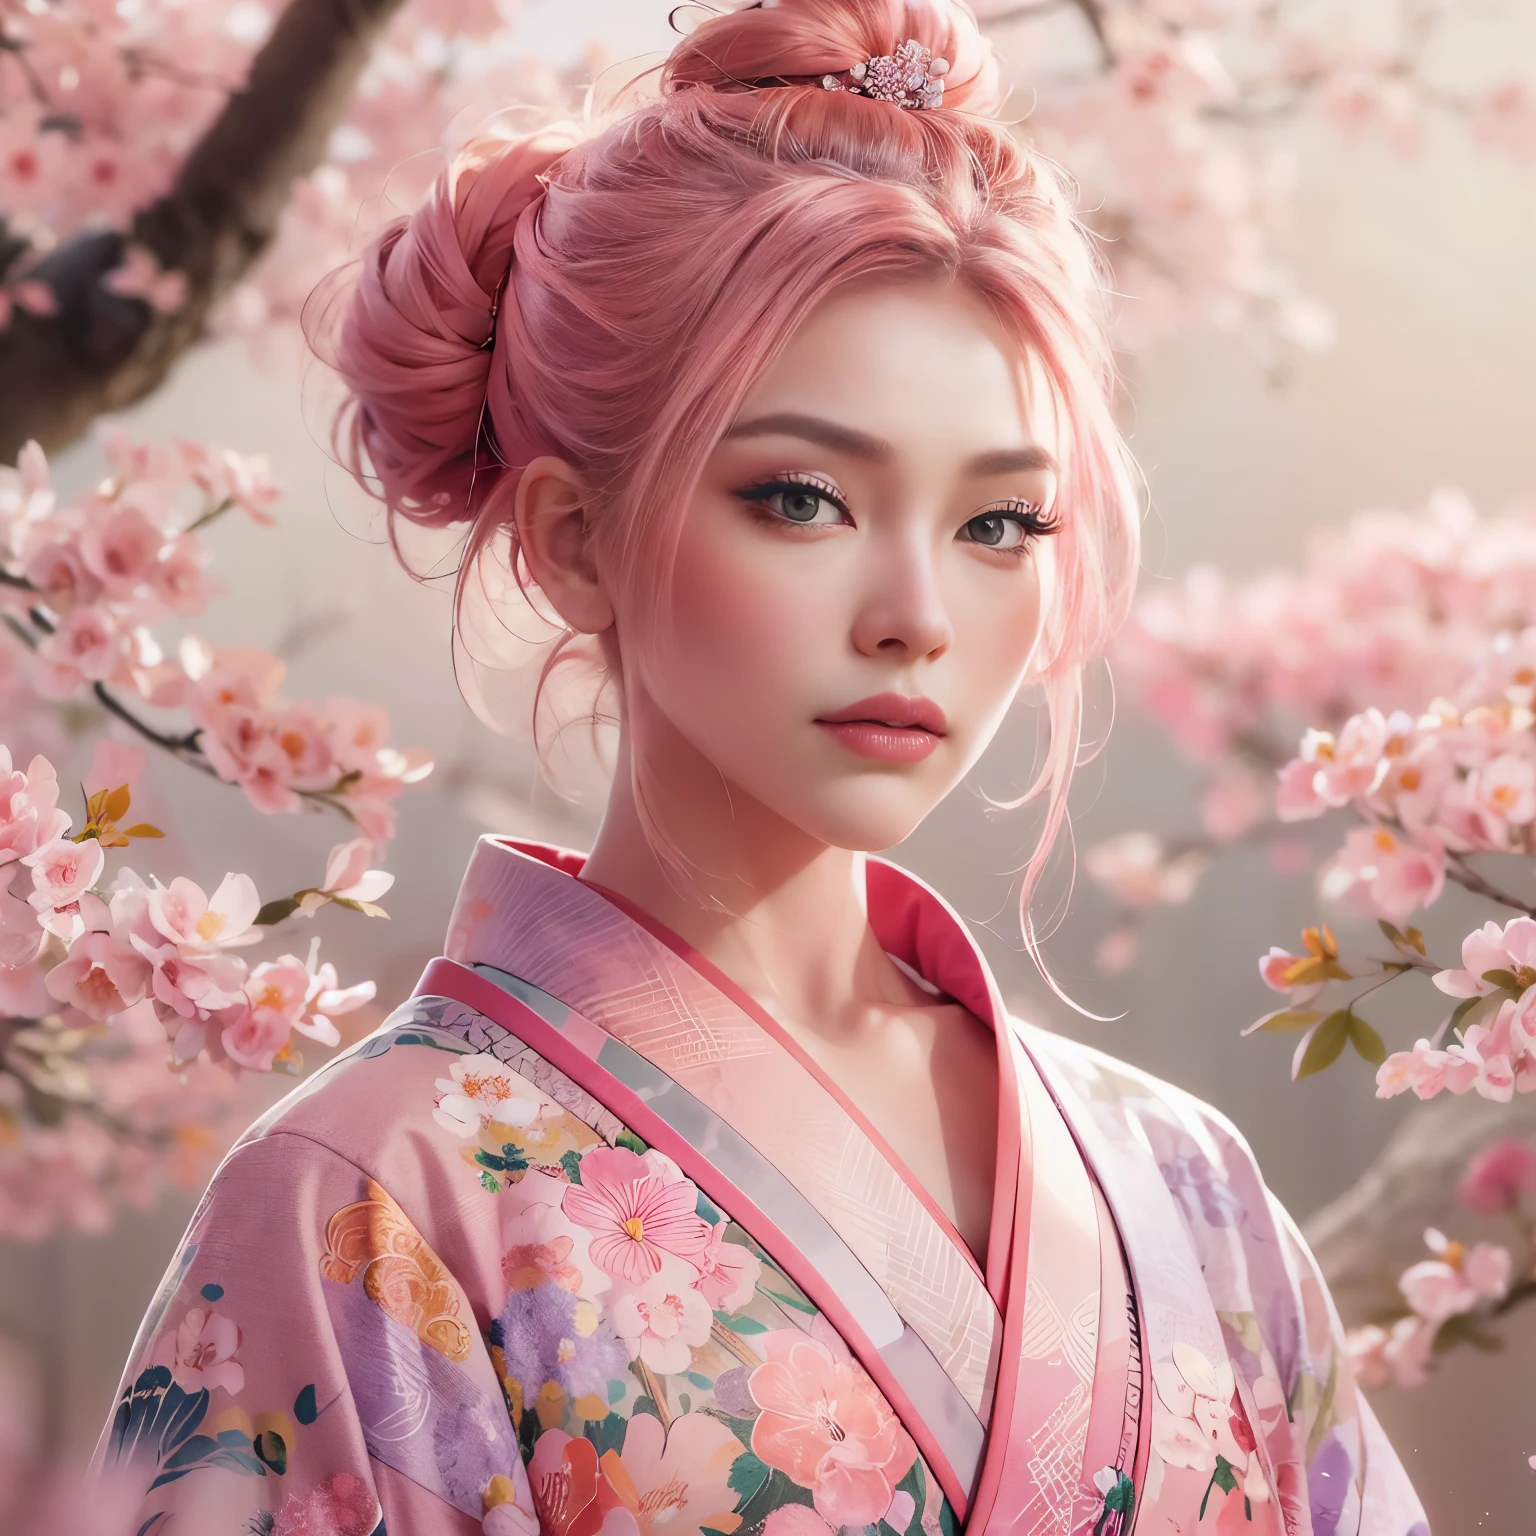 超現實的, 非常詳細, 以及一個年輕人的高解析度 16k 影像, engfa 臉的美麗女性. 她有一頭粉紅色的髮髻和半透明的皮膚, 穿著傳統的粉紅色日本和服，上面有小花圖案. 這張圖像捕捉了精神世界的空靈之美和神秘. 風格靈感源自精緻, 日本傳統藝術中的柔和美學. 背景是充滿粉紅色的櫻花樹.